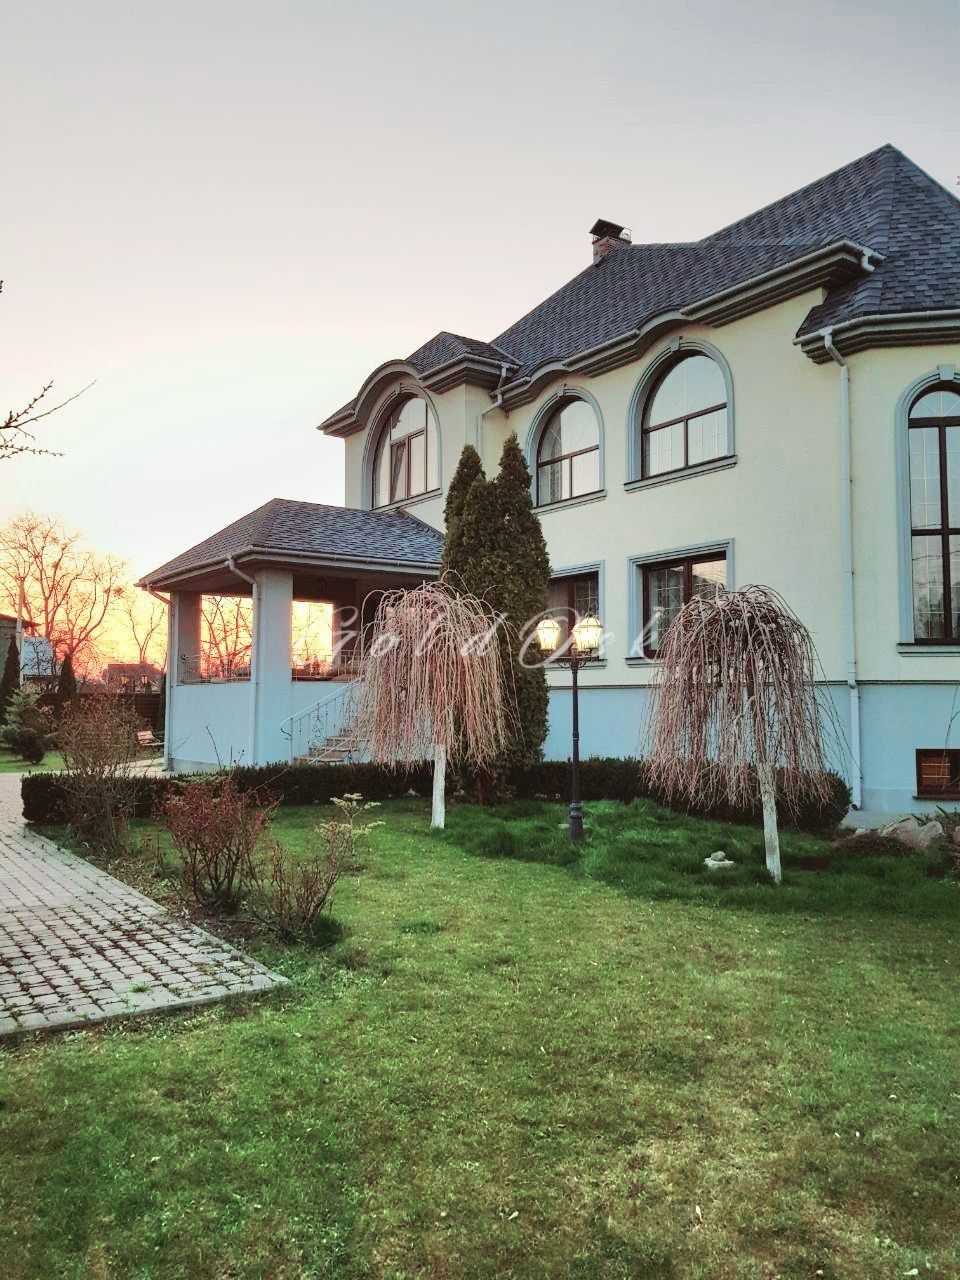 Оренда будинку Vip-рівня на березі озера,Осокорки,м.Славутич 500метрів